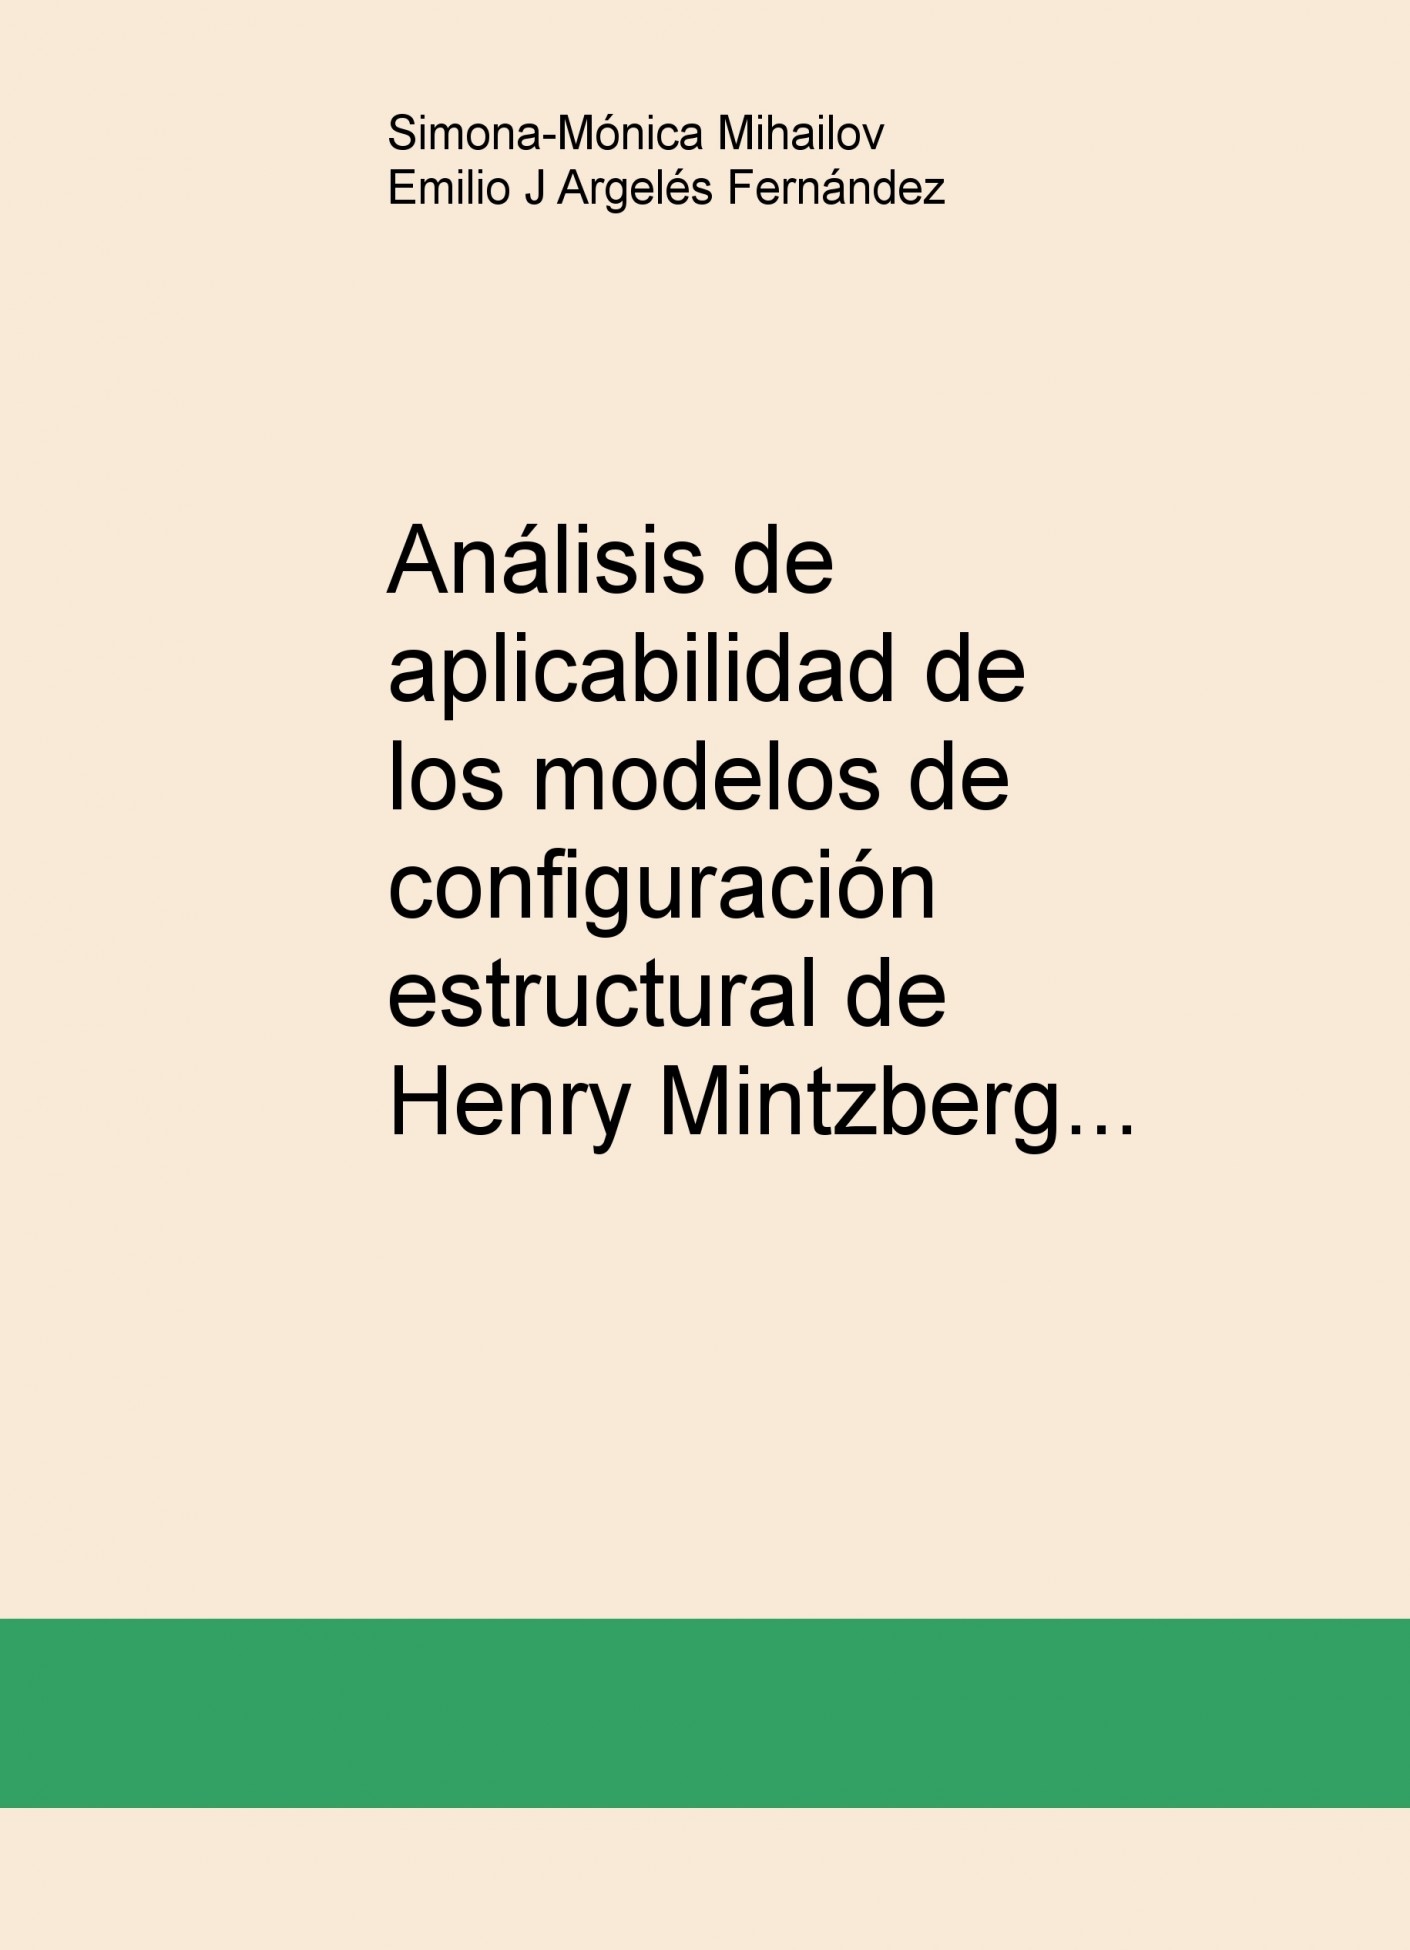 Análisis de aplicabilidad de los modelos de configuración estructura